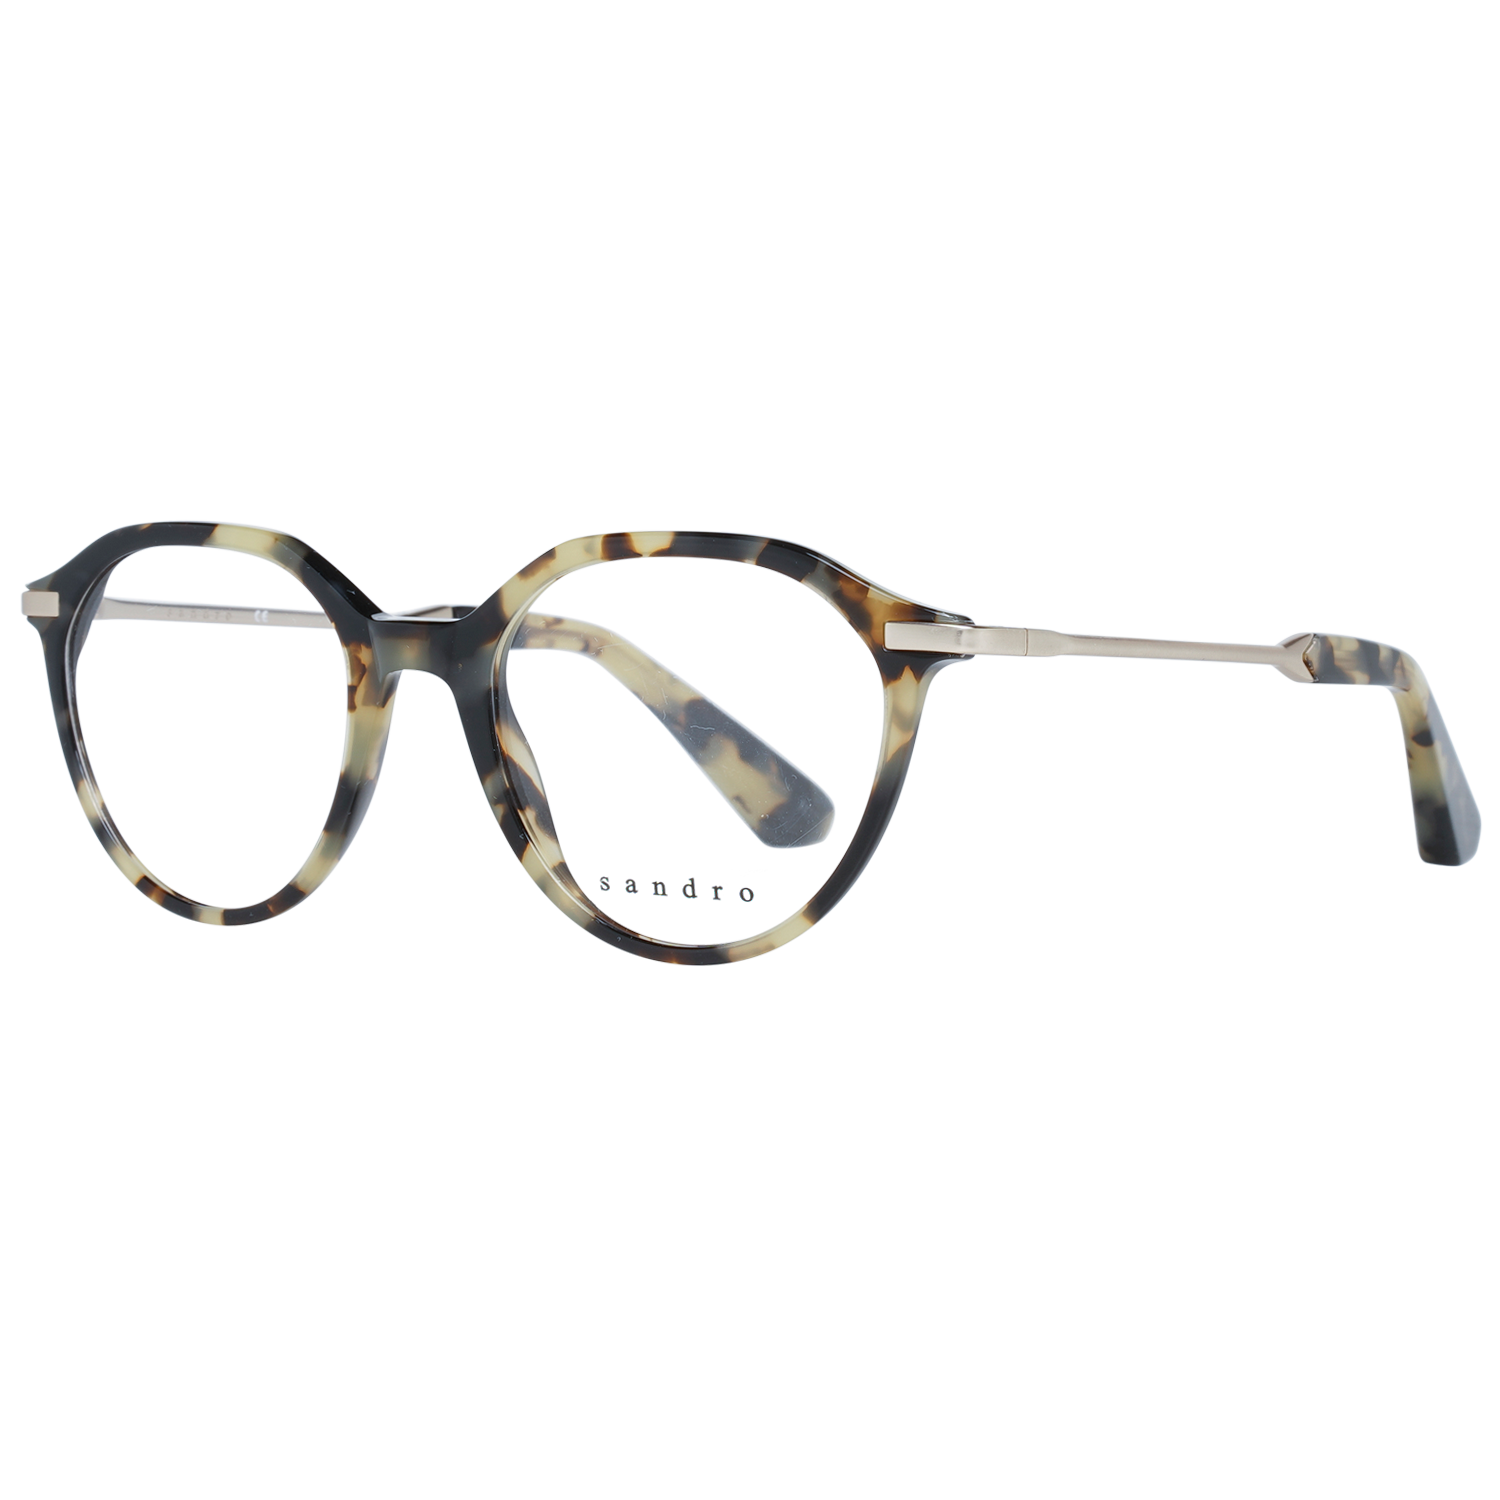 Sandro Frames Sandro Optical Frame SD2005 206 47 Eyeglasses Eyewear UK USA Australia 